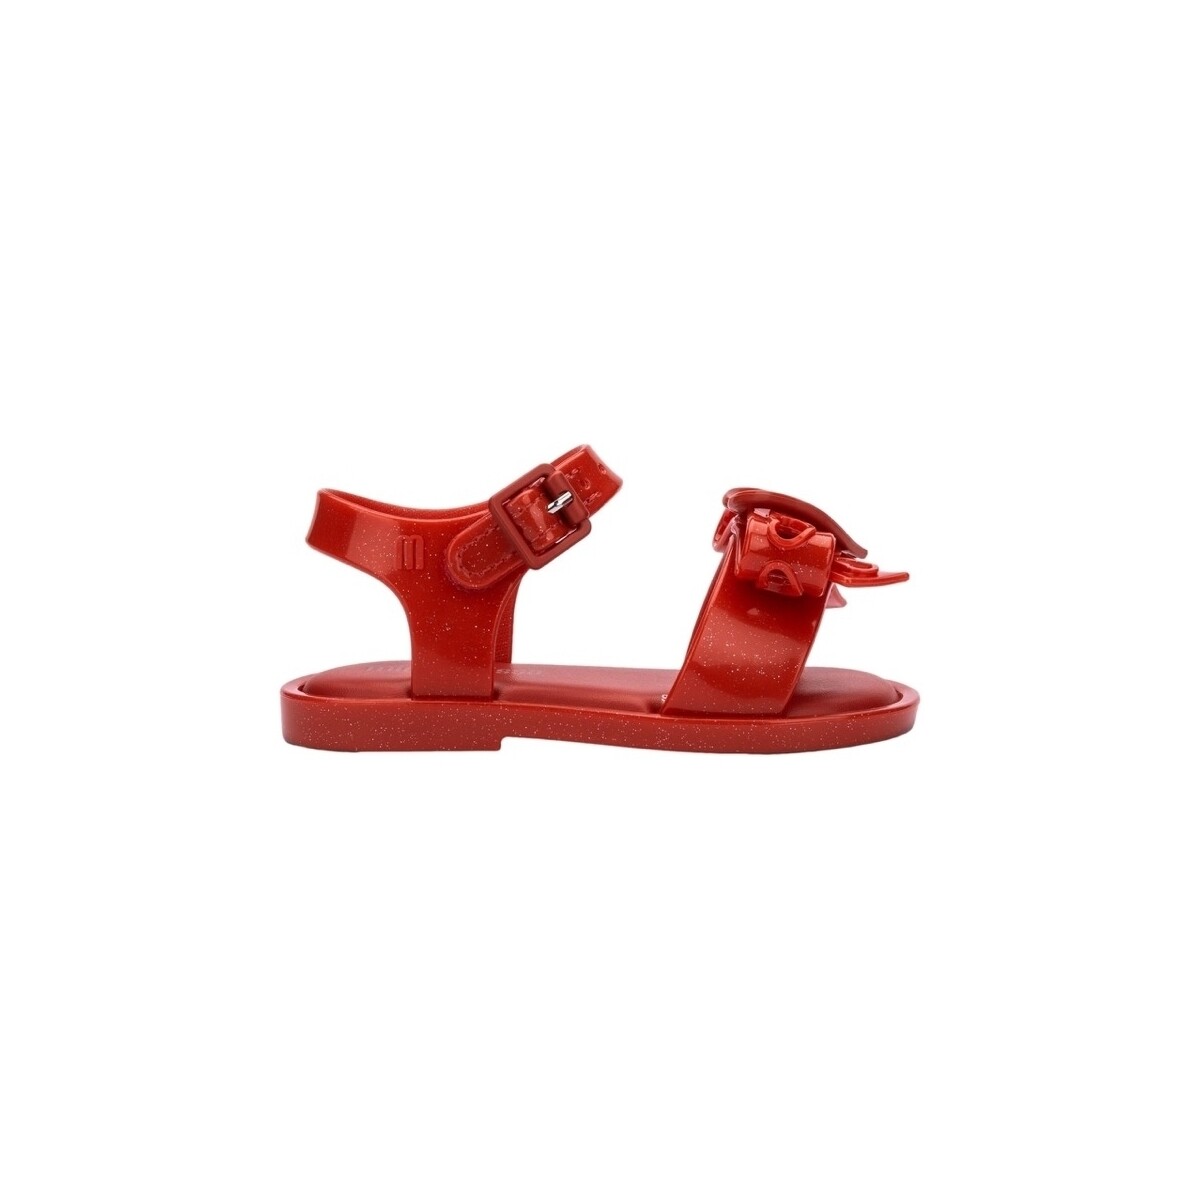 Schuhe Kinder Sandalen / Sandaletten Melissa MINI  Mar Baby Sandal Hot - Glitter Red Grün